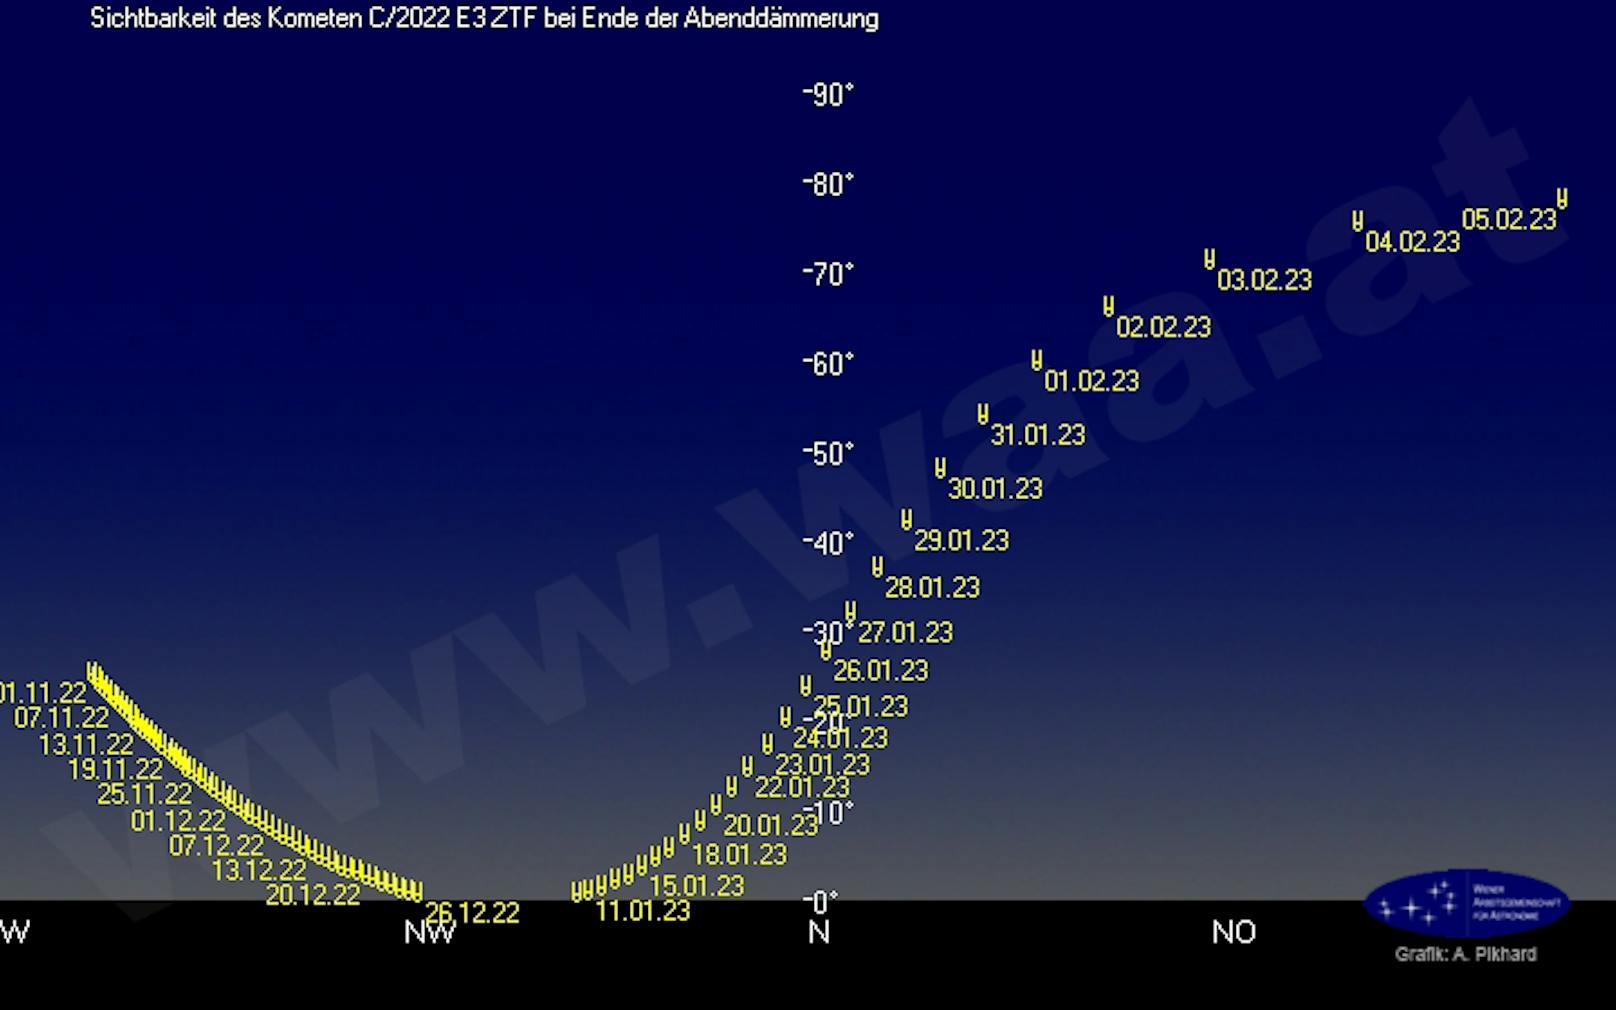 Die Grafik zeigt die Position des grünen Kometen C/2022E3 <strong>zum Ende der Abenddämmerung</strong> zu verschiedenen Tagen am Nachhimmel über Wien.